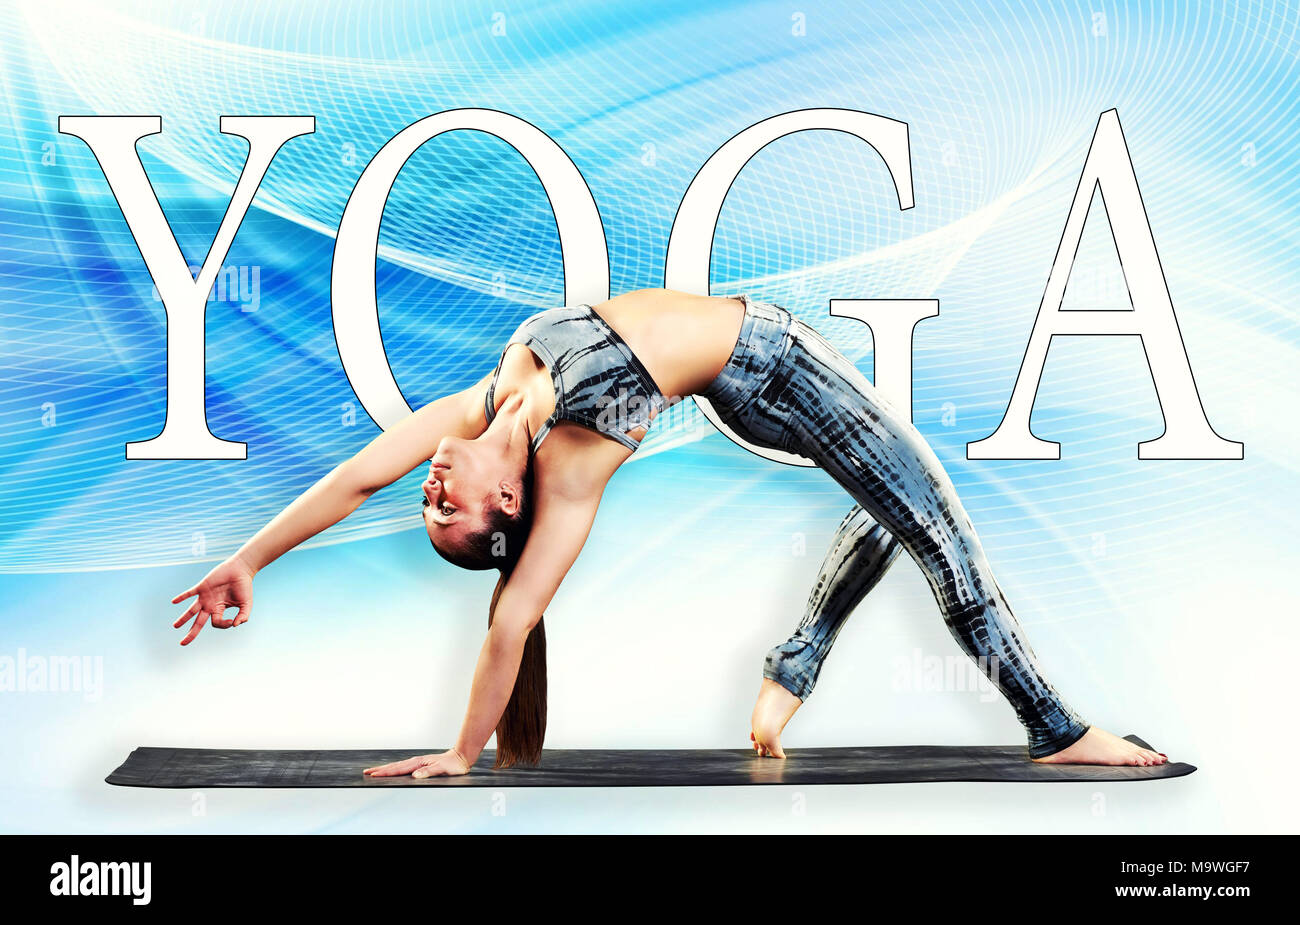 Passen geschmeidig junge Frau eine anmutige wilde Sache yoga Pose wölben Ihre Körper wieder auf Hochtouren Über einer grafik hintergrund im Profil anzeigen Stockfoto